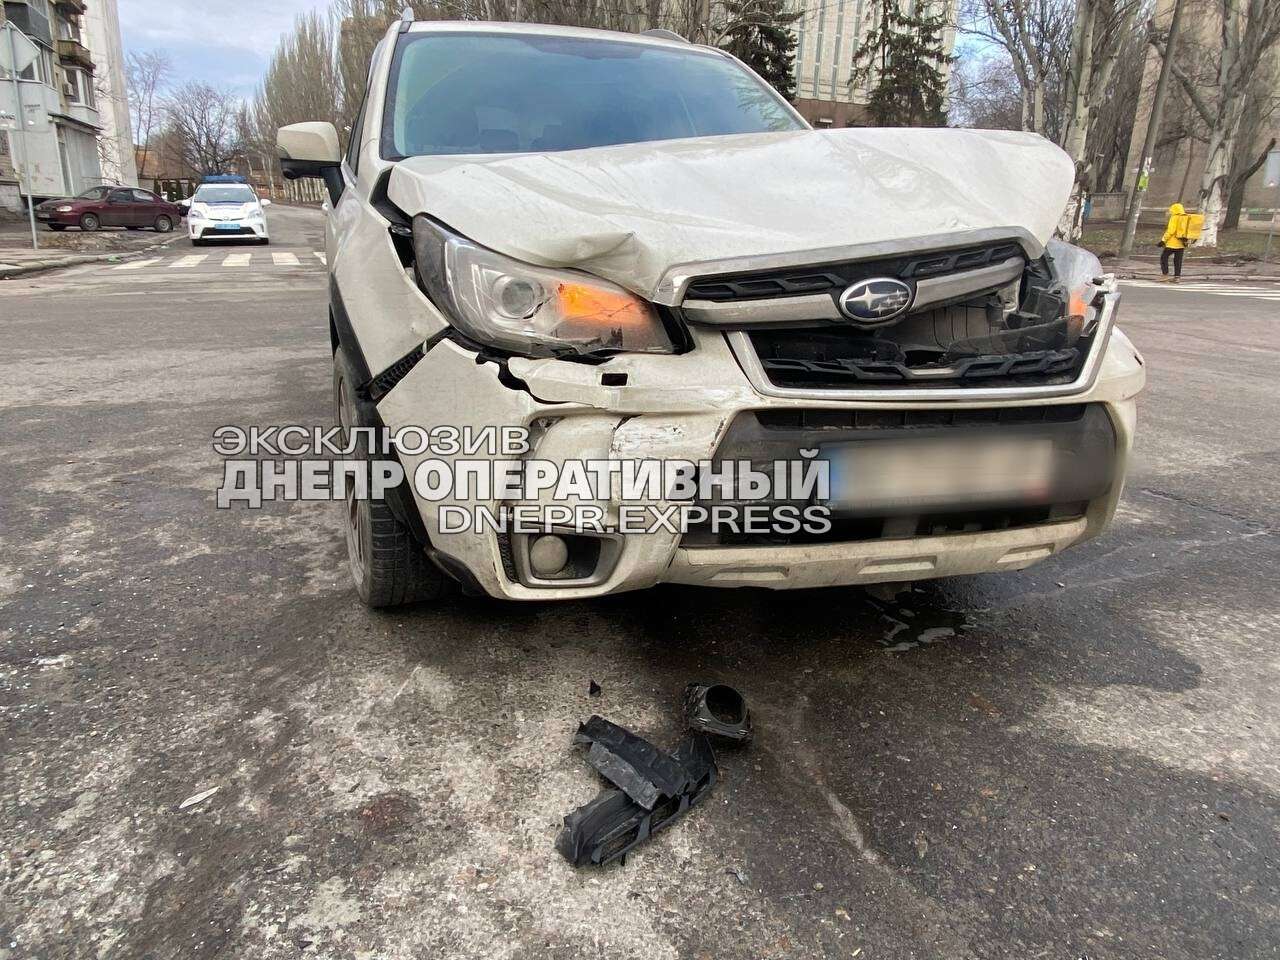       Subaru   Chevrolet:  